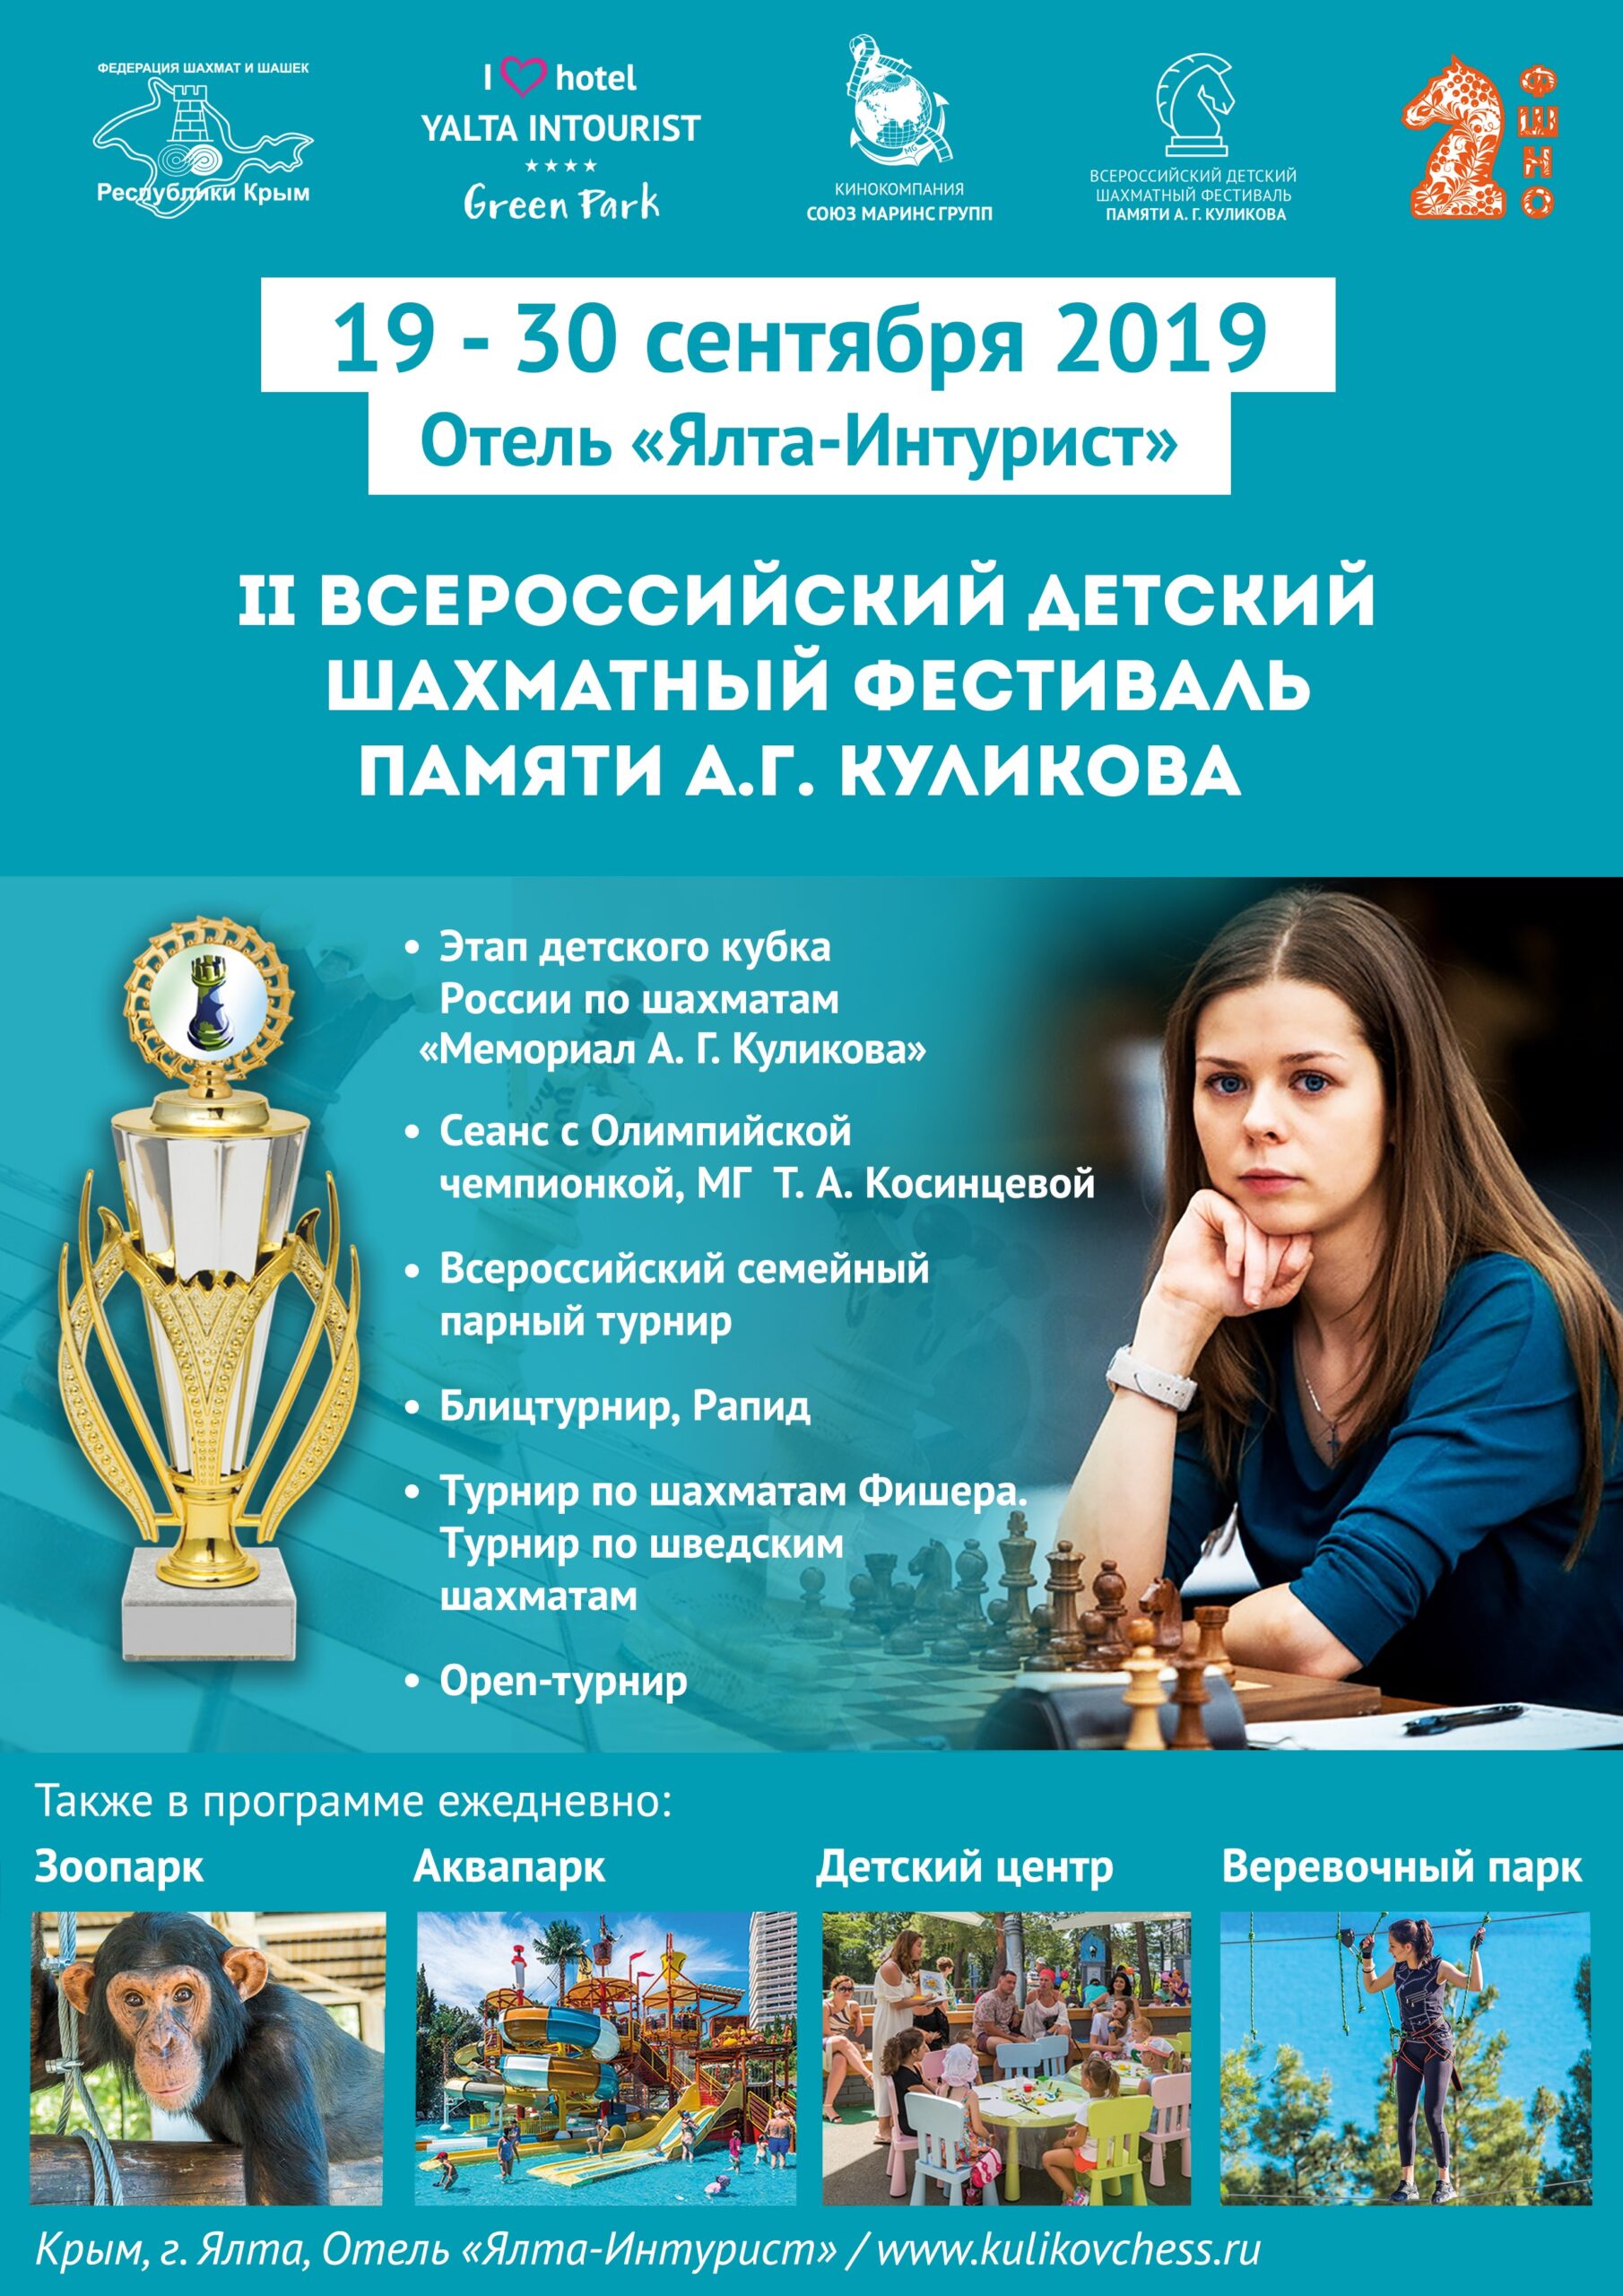 В Отеле Yalta Intourist пройдет II Всероссийский детский шахматный фестиваль памяти А.Г. Куликова